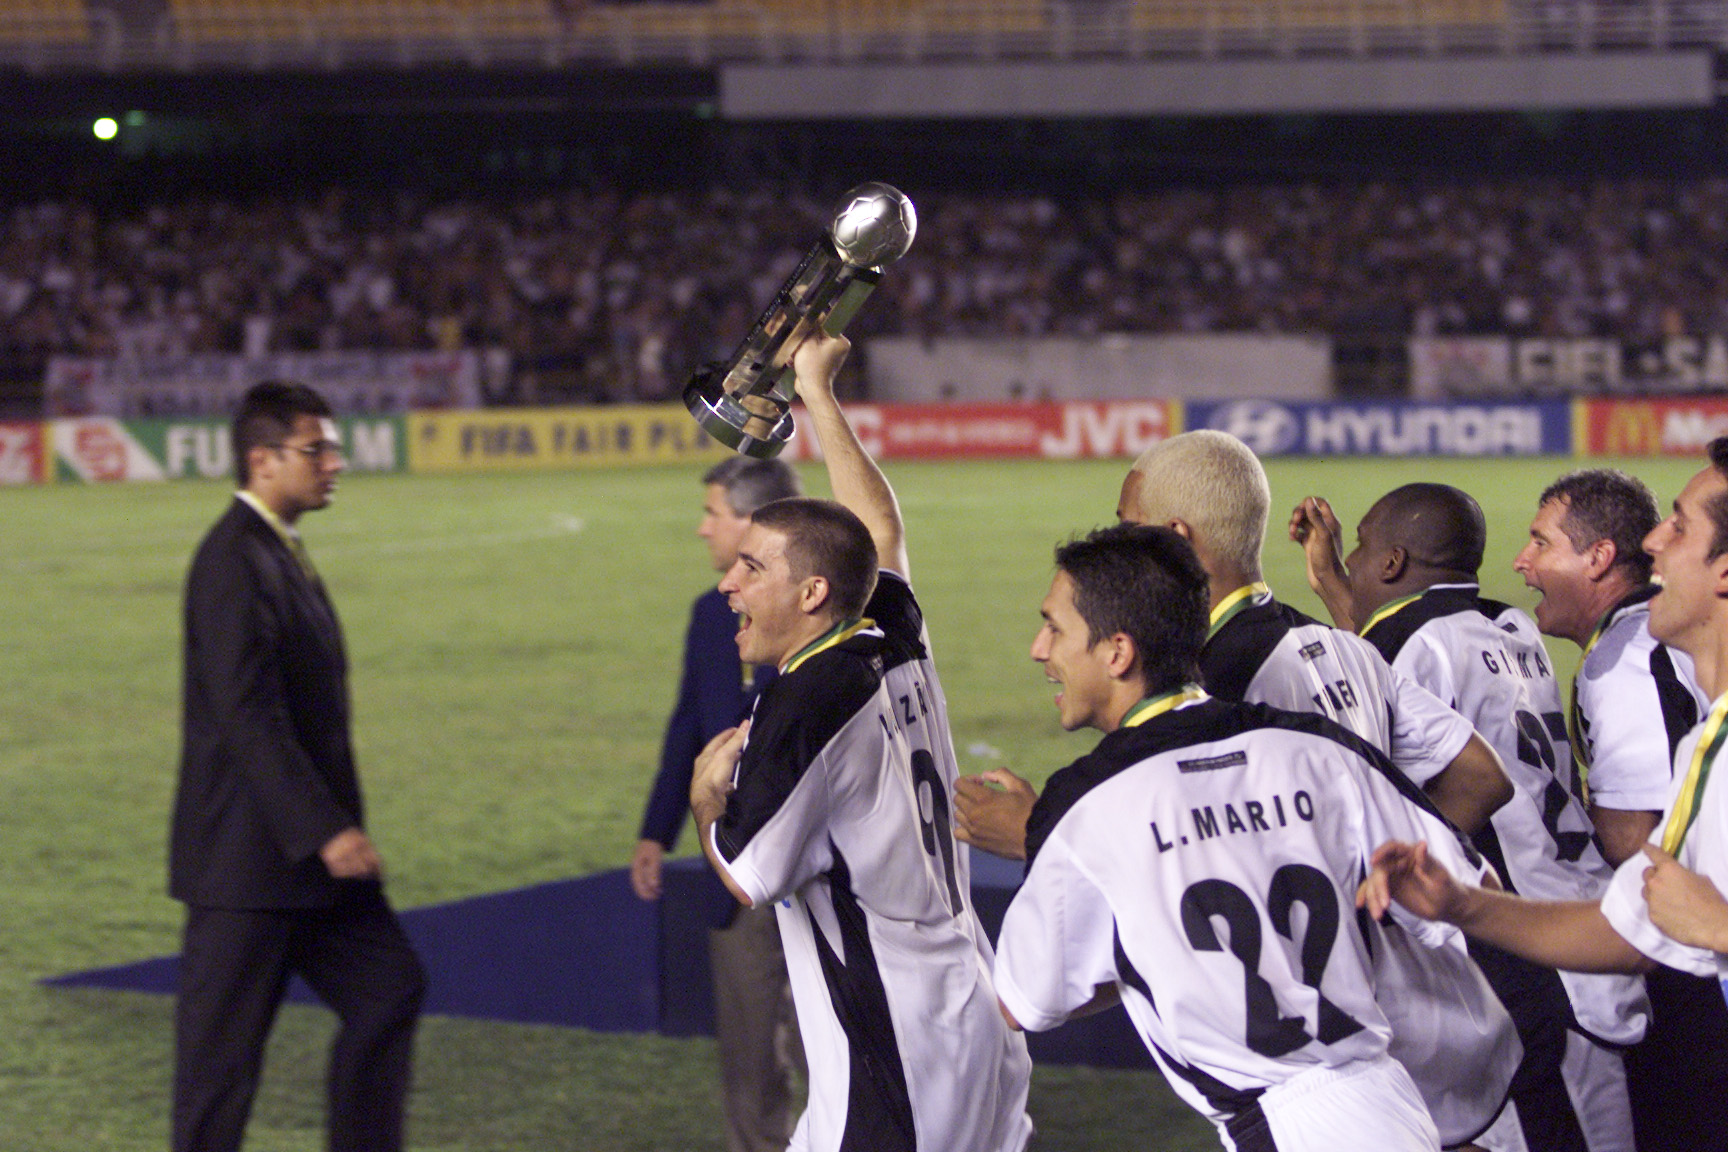 Especial Corinthians Campeão Mundial FIFA 2000